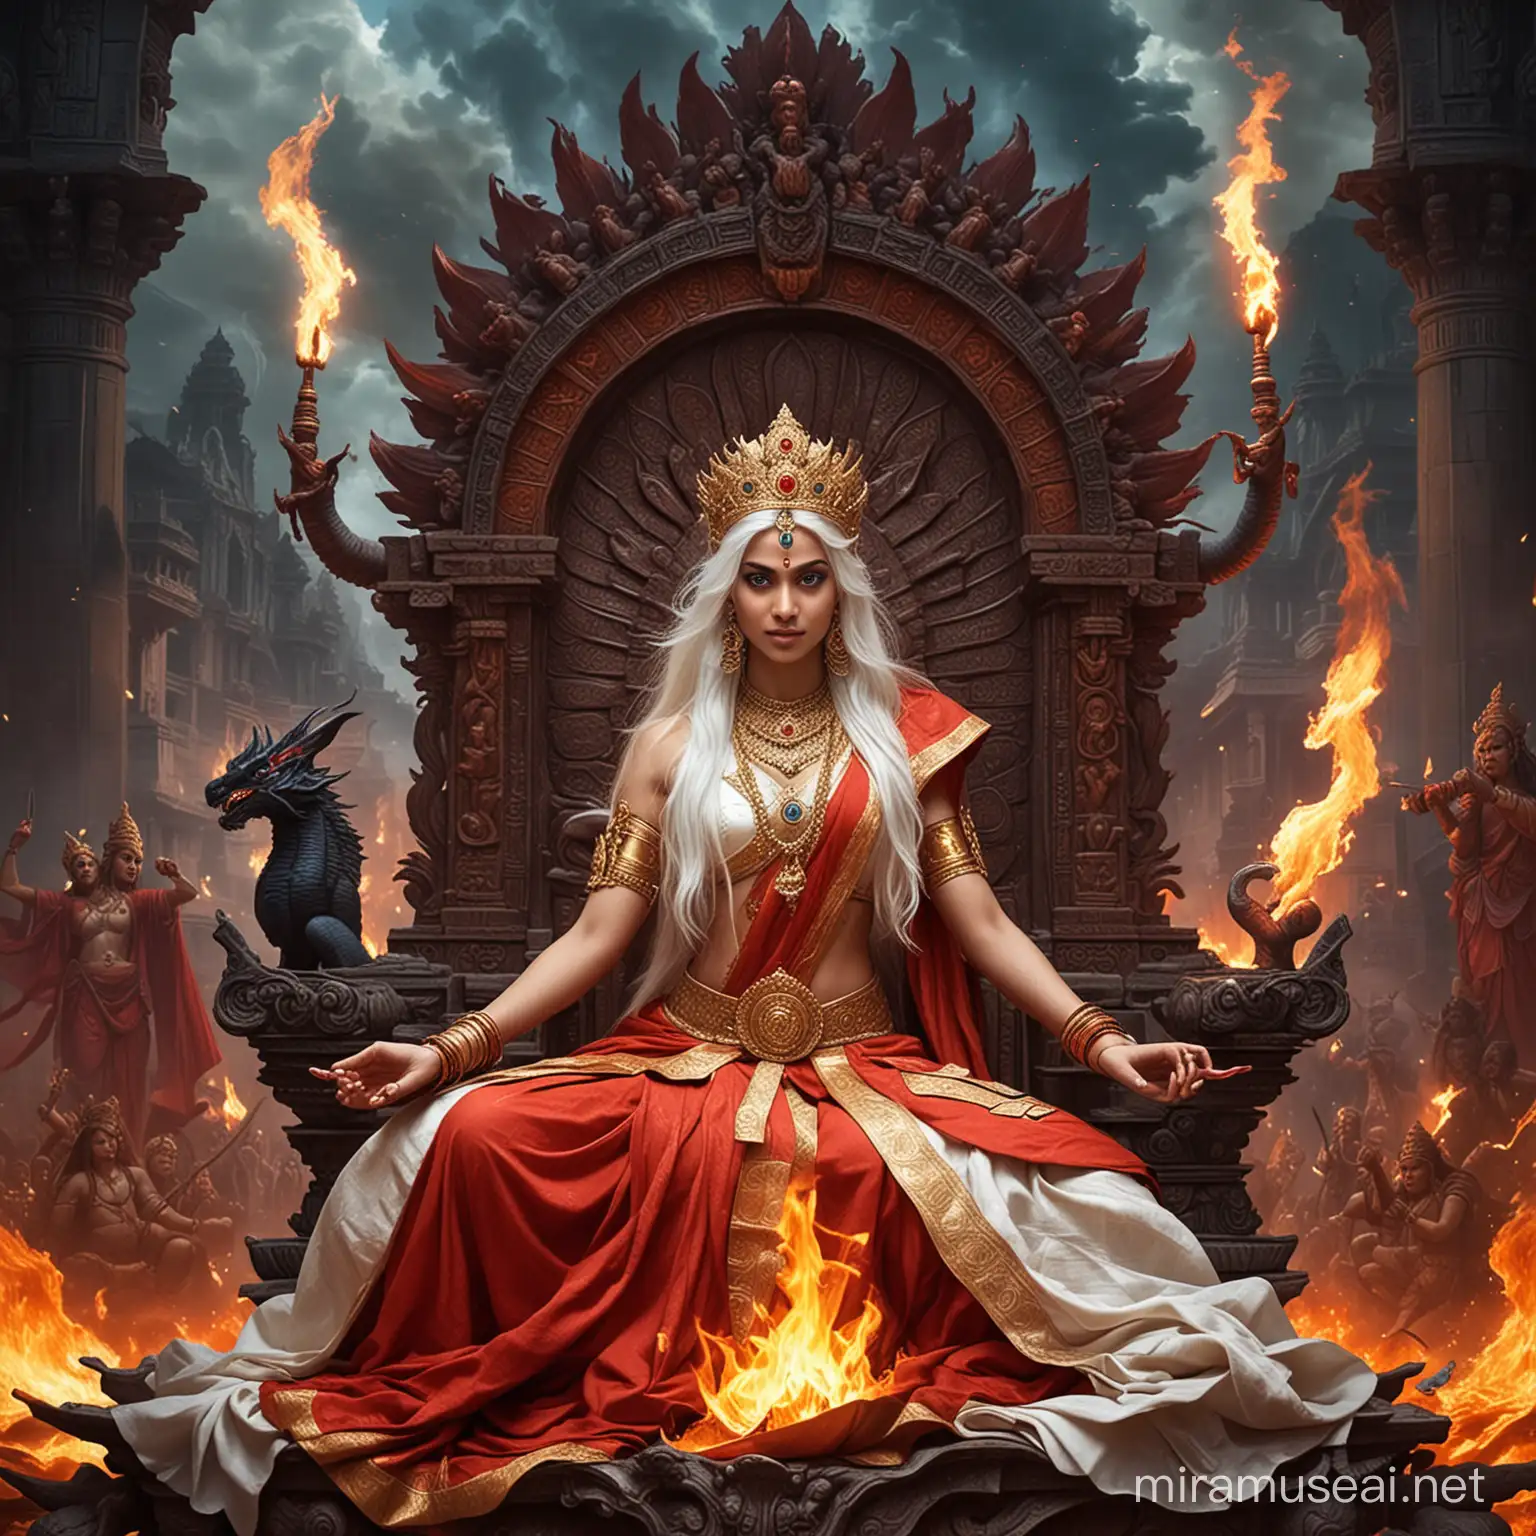 Majestic Hindu Empress in Combat Amidst Fiery Divine Realm